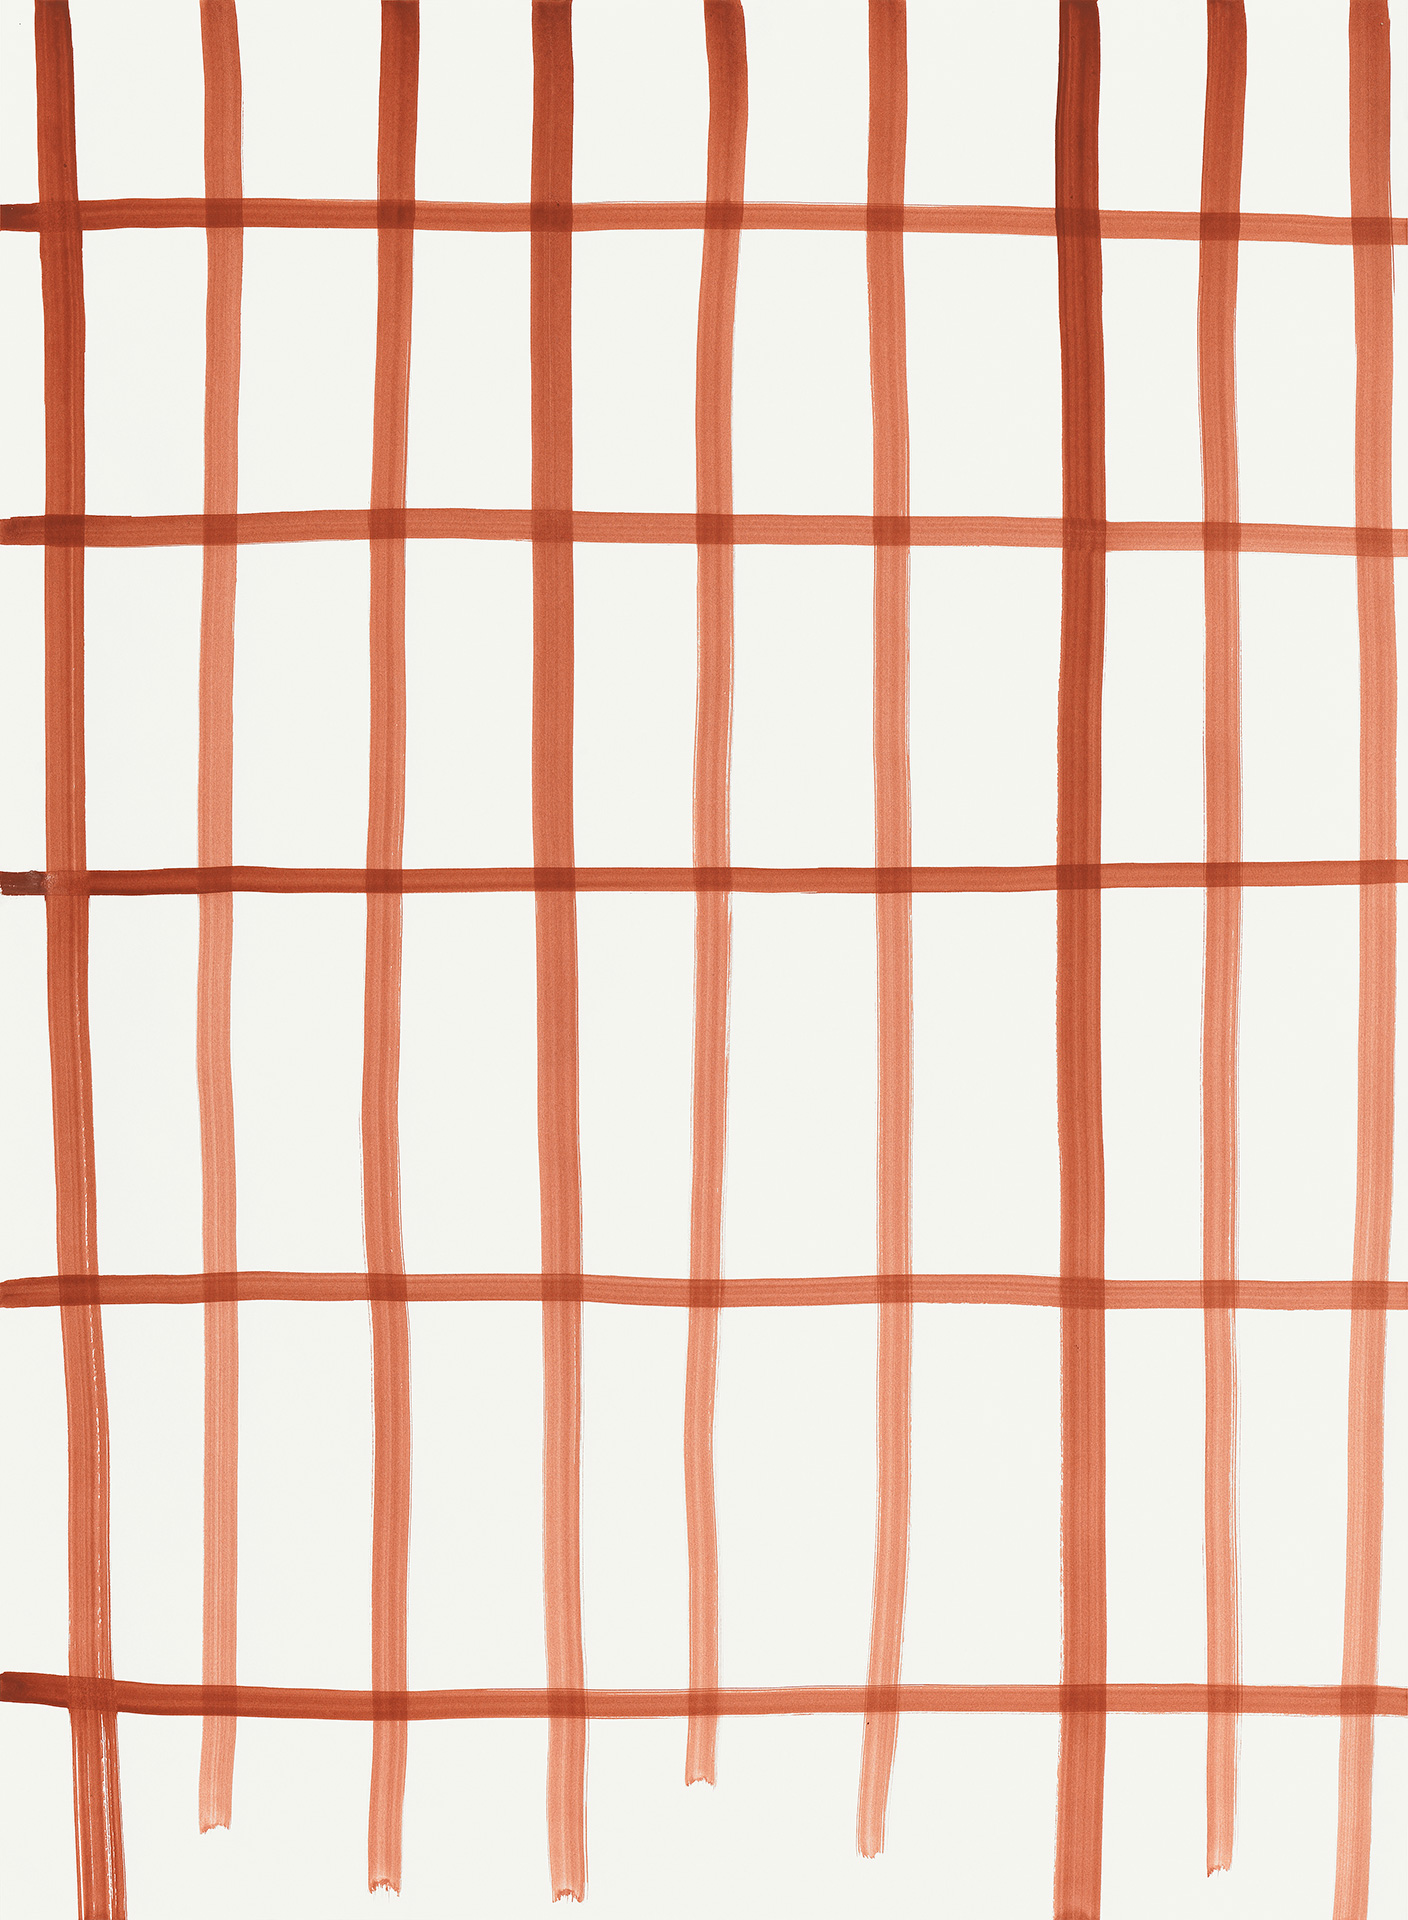 Die Abbildung der Gouache zeigt verschiedene orangerote Linien, die sich kreuzen.